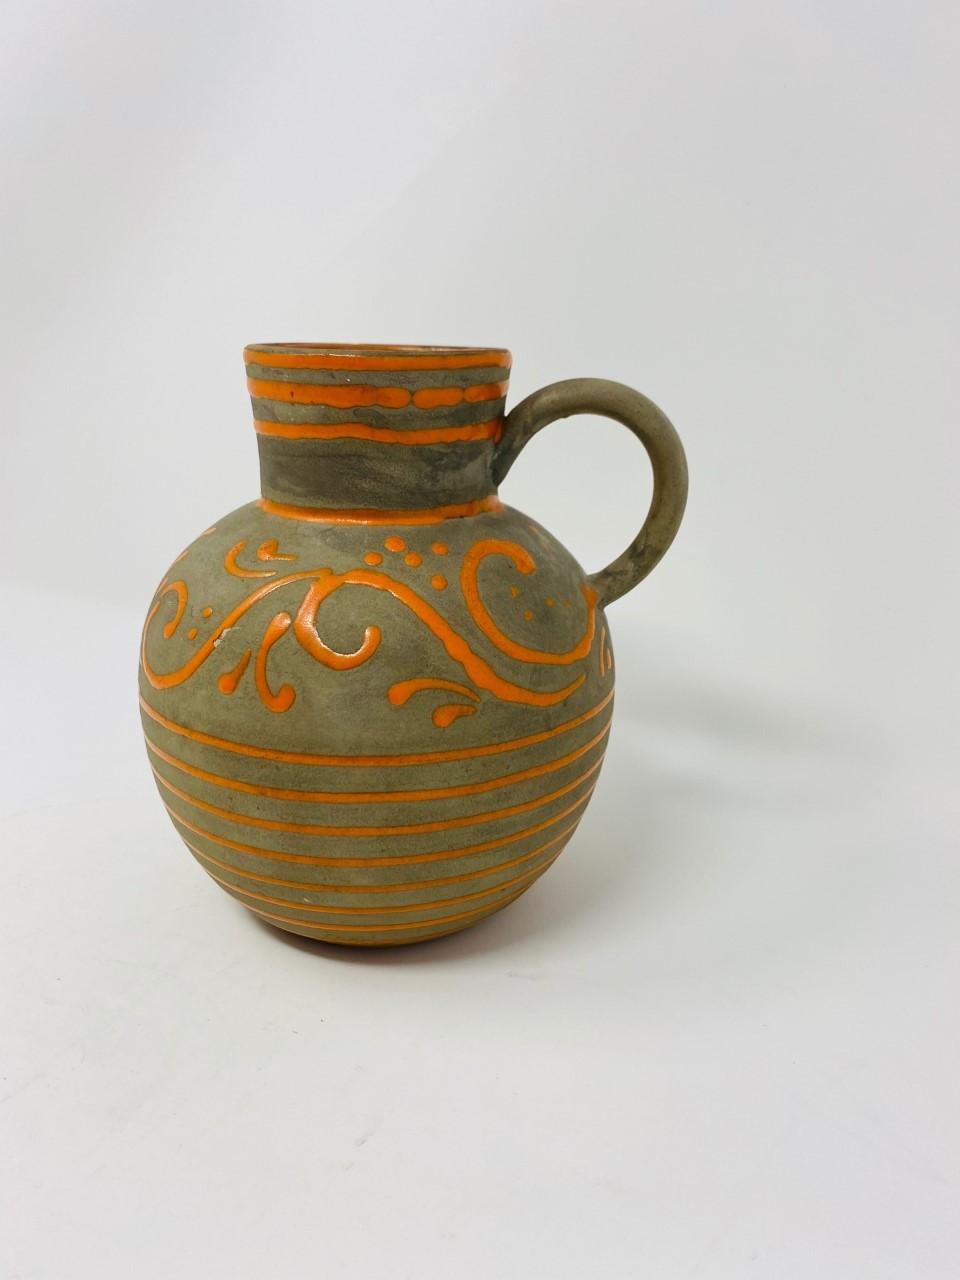 Rare jarre ou vase en poterie de Nittsjö Keramik. Magnifiquement fabriquée, cette pièce vintage apporte style et joie aux yeux. Décoré et émaillé à la main en gris taupe foncé avec des bandes horizontales orange et un motif décoratif de lignes